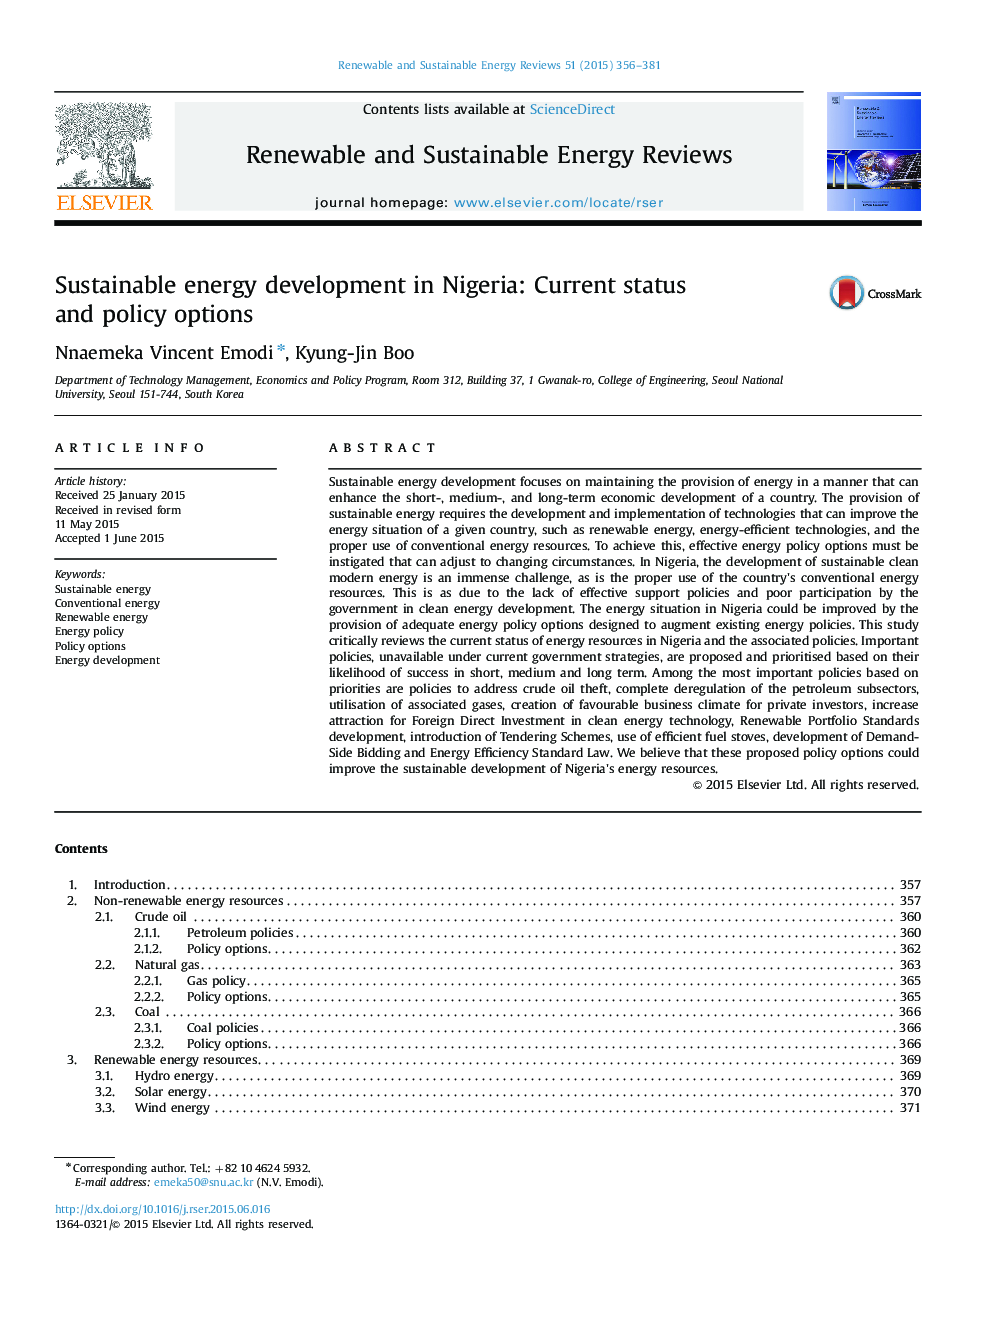 توسعه پایدار انرژی در نیجریه: وضعیت فعلی و گزینه های سیاست 